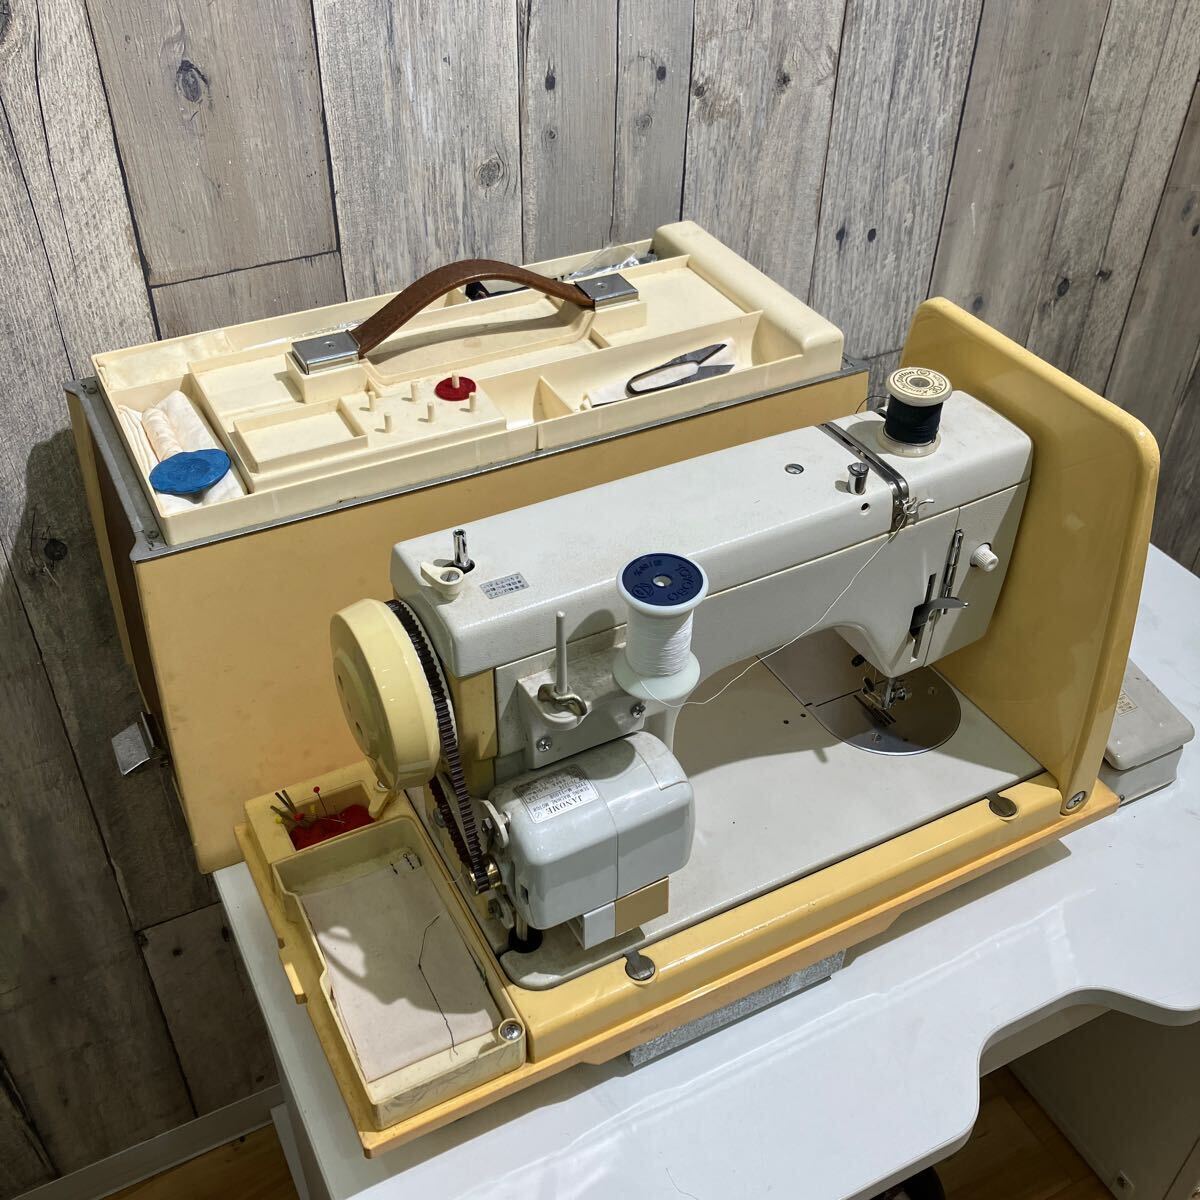 JANOME швейная машина M-11008 работа товар ( электризация рабочее состояние подтверждено ) Vintage 